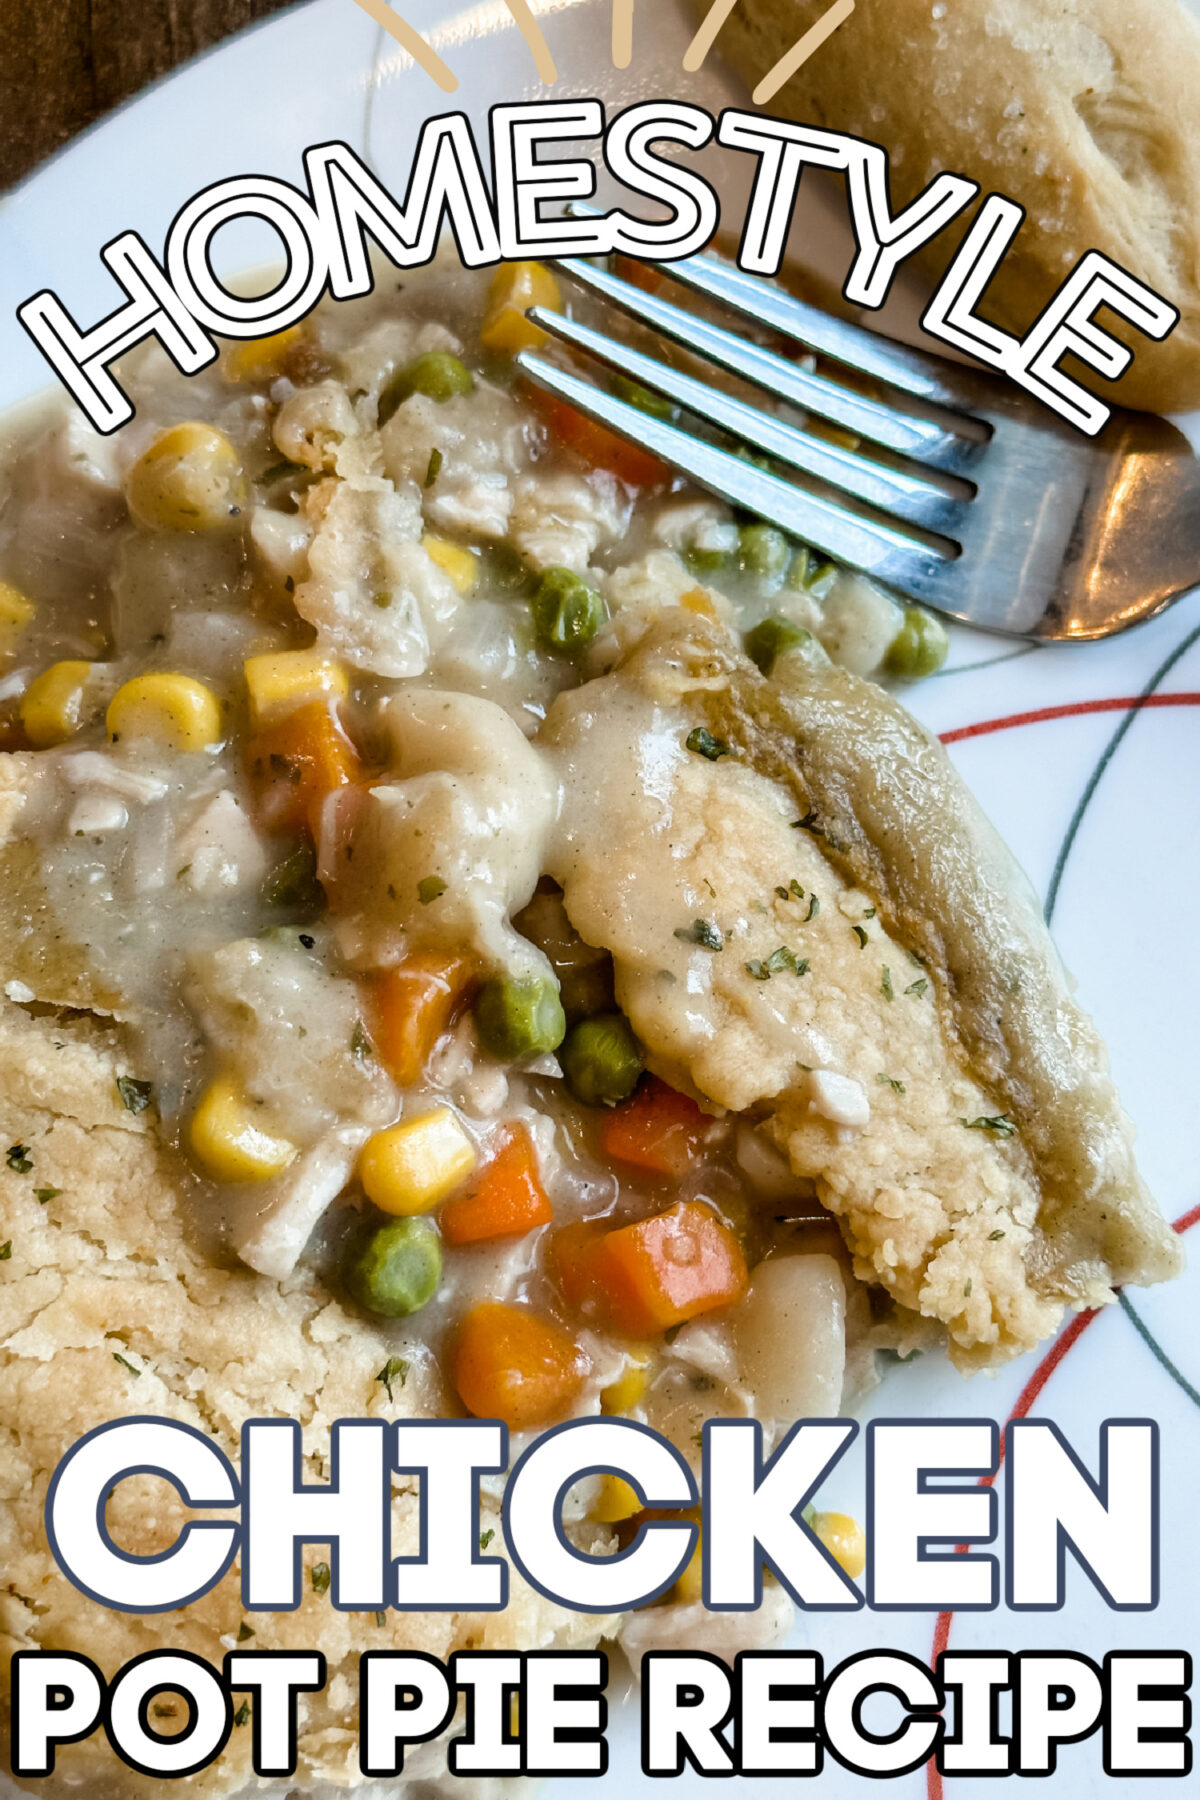 Homestyle Chicken Pot Pie Recipe (1)